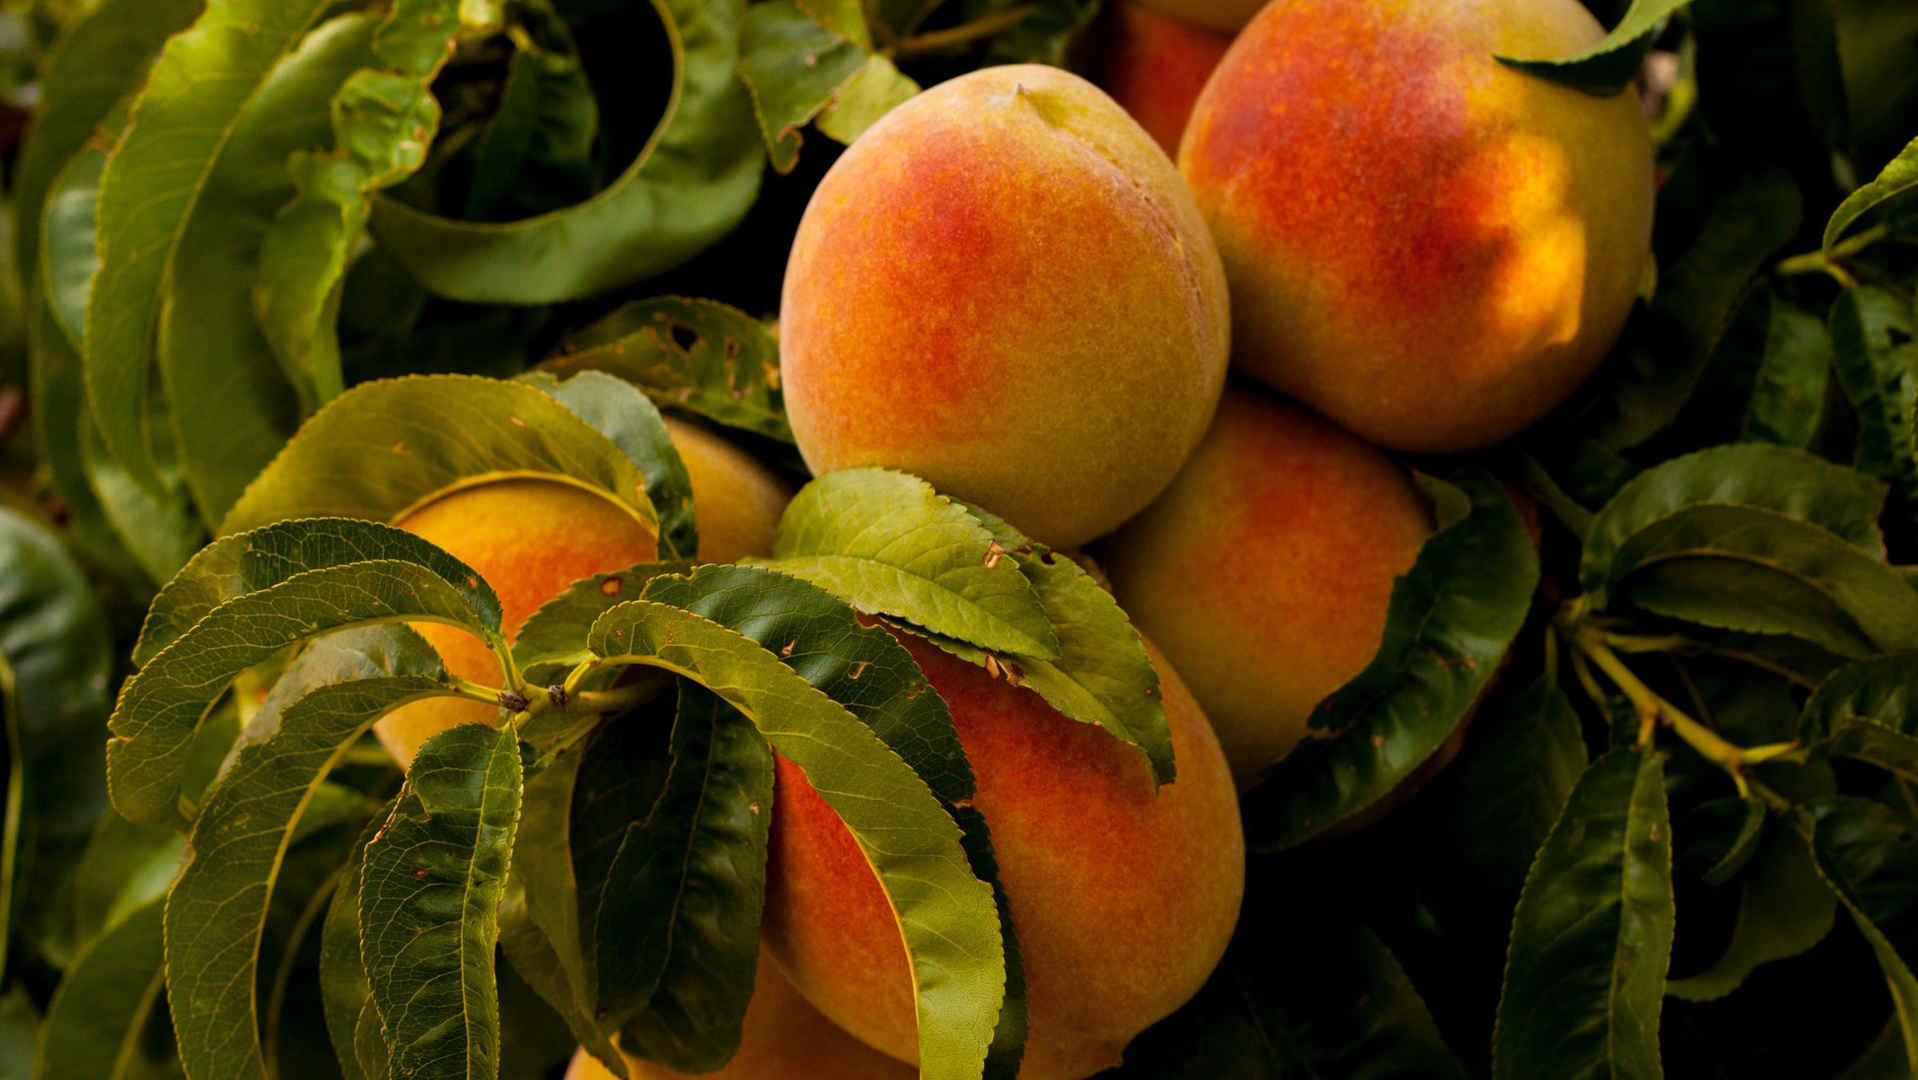 香甜可口的水果“水蜜桃”高清摄影手机壁纸-